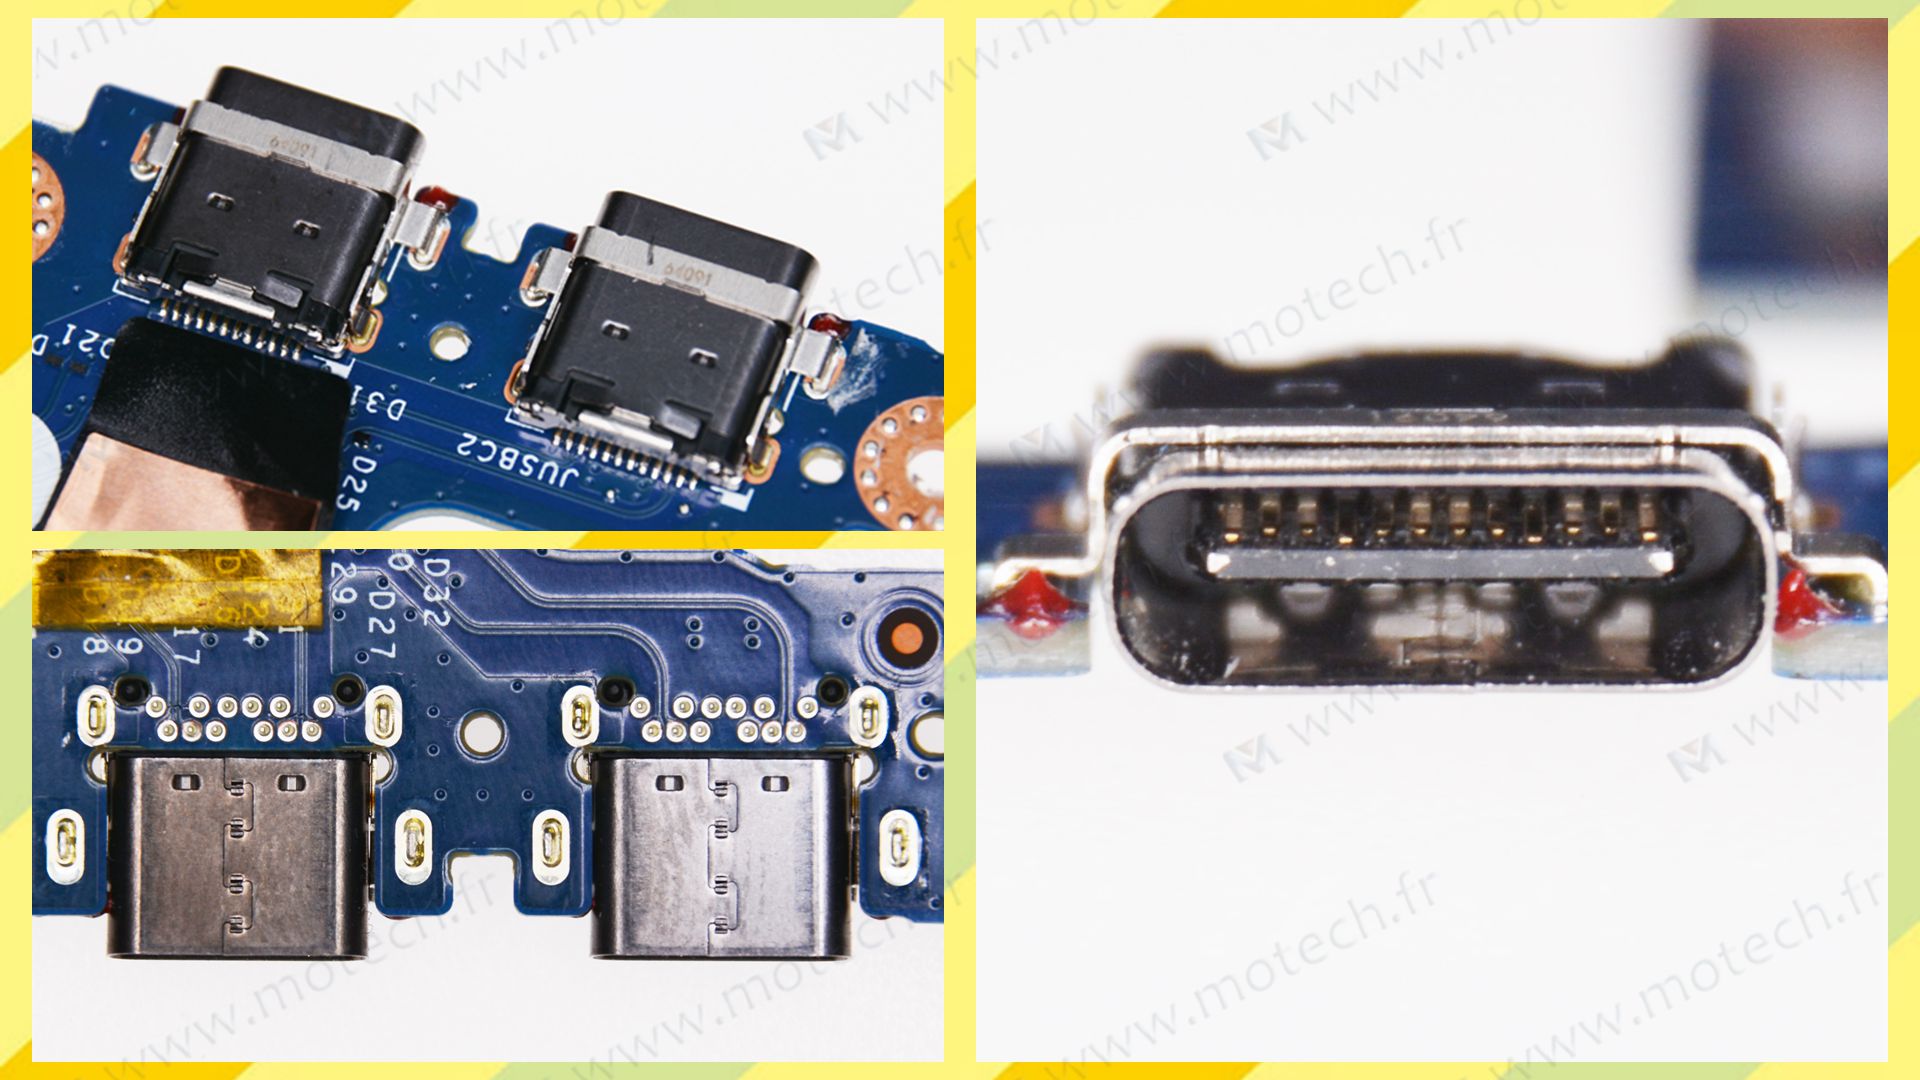 戴尔 9250 充电口维修, 更换 戴尔 9250 电源头, 戴尔 9250 不充电, 戴尔 9250 接触不良,戴尔 9250 焊接电源头,戴尔 9250 充电故障,